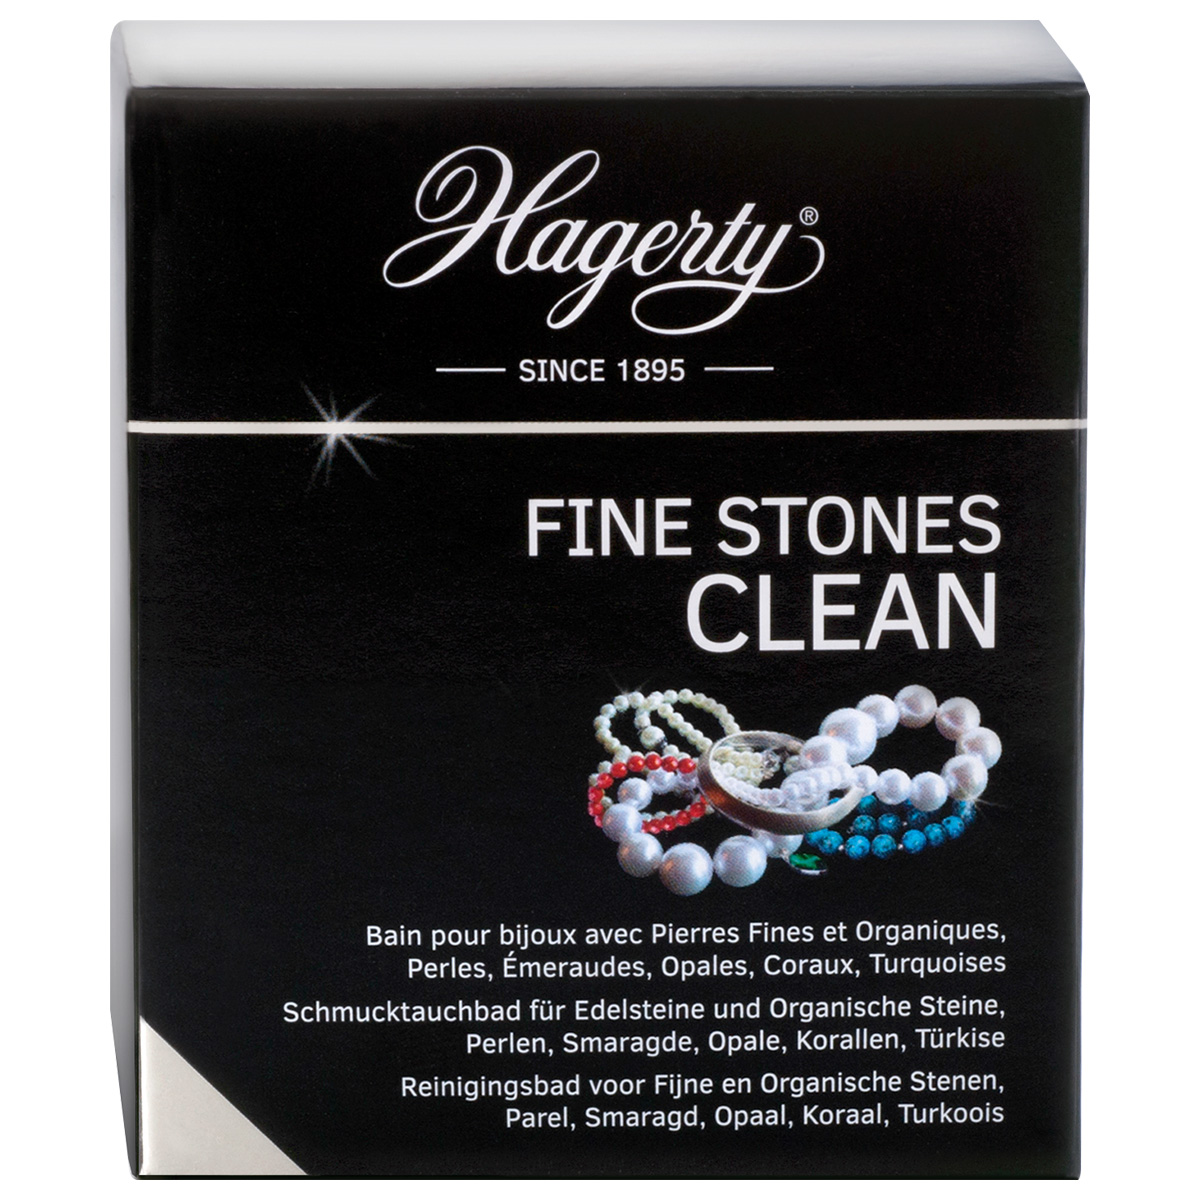 Hagerty Fine Stones Clean, produit d'entretien pour pierres précieuses, 170 ml